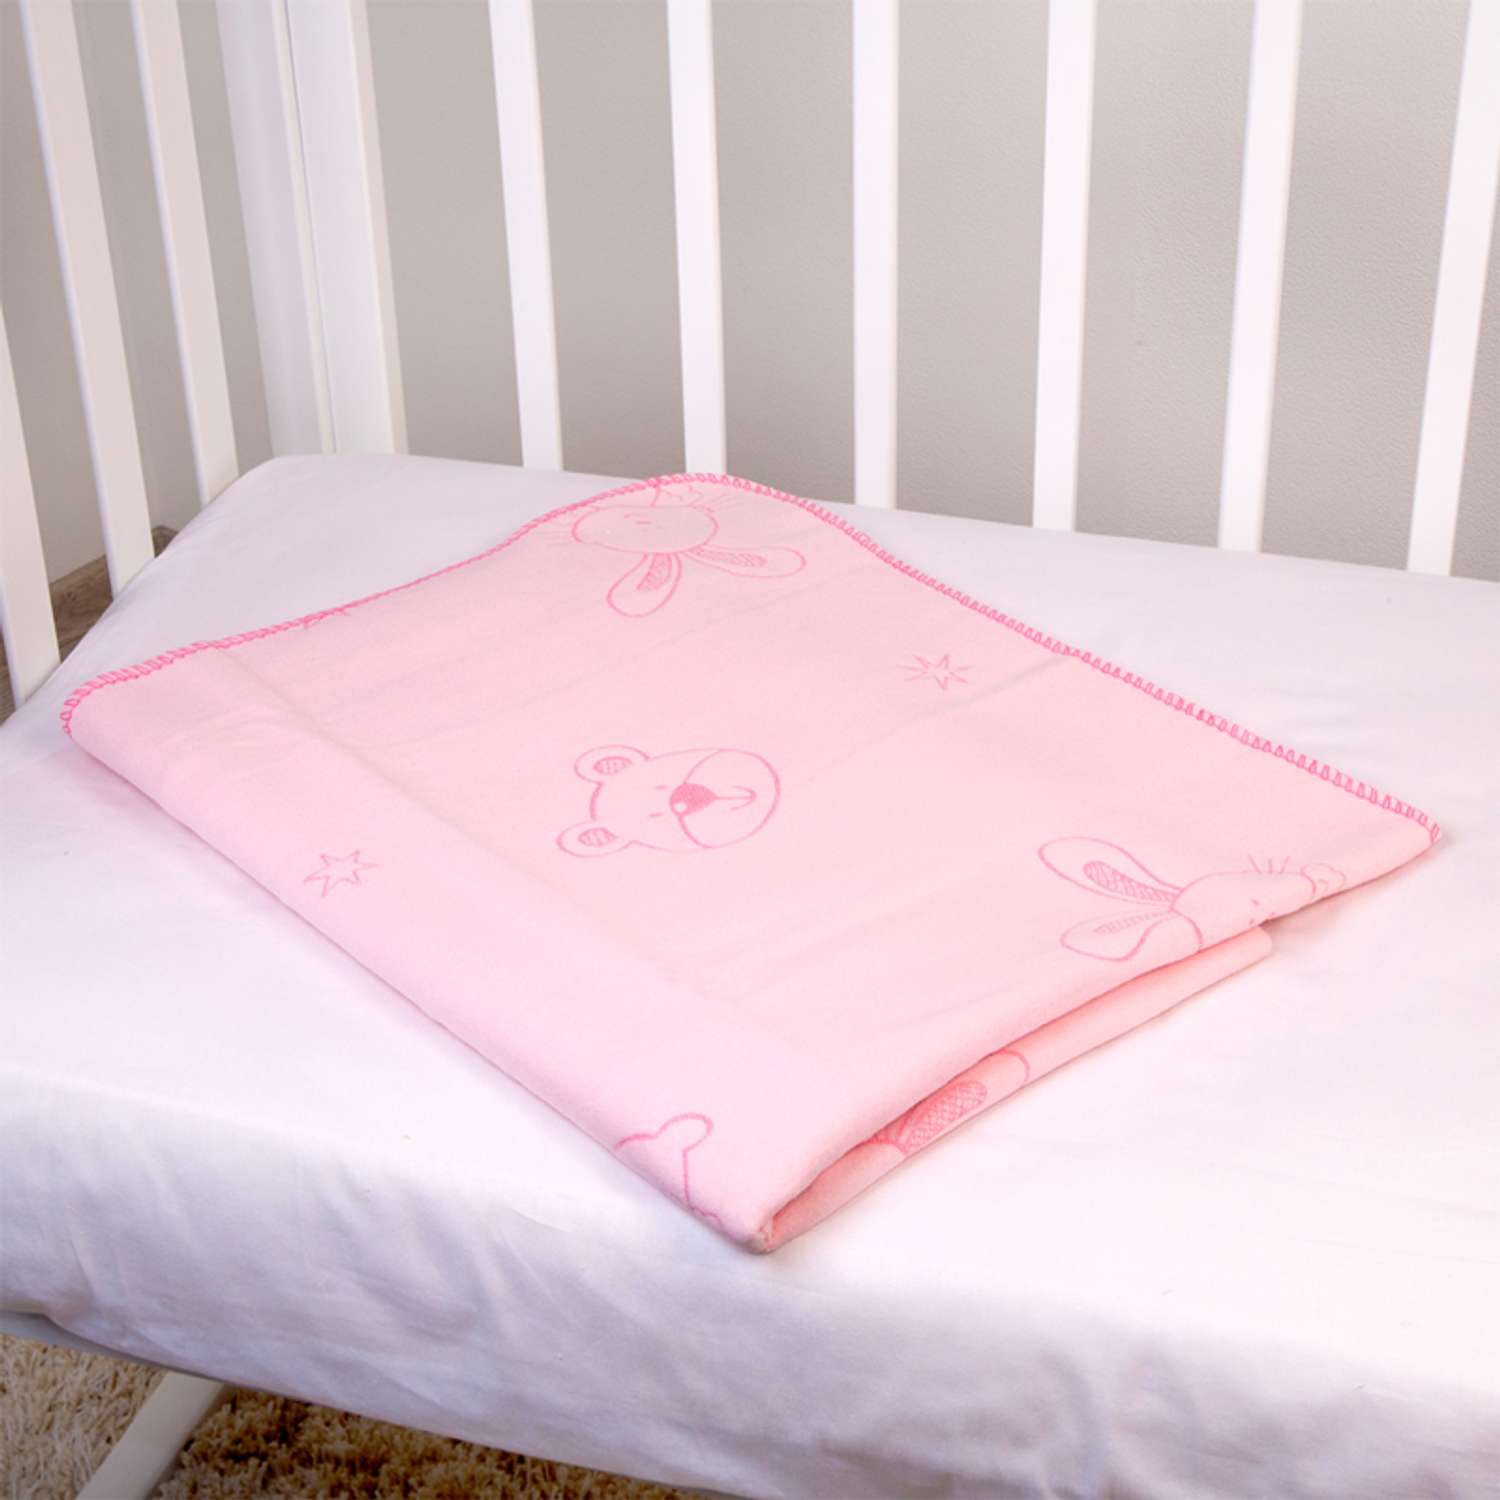 Одеяло байковое ОТК (отделка оверлок) 100х140 в ассортименте - фото 19